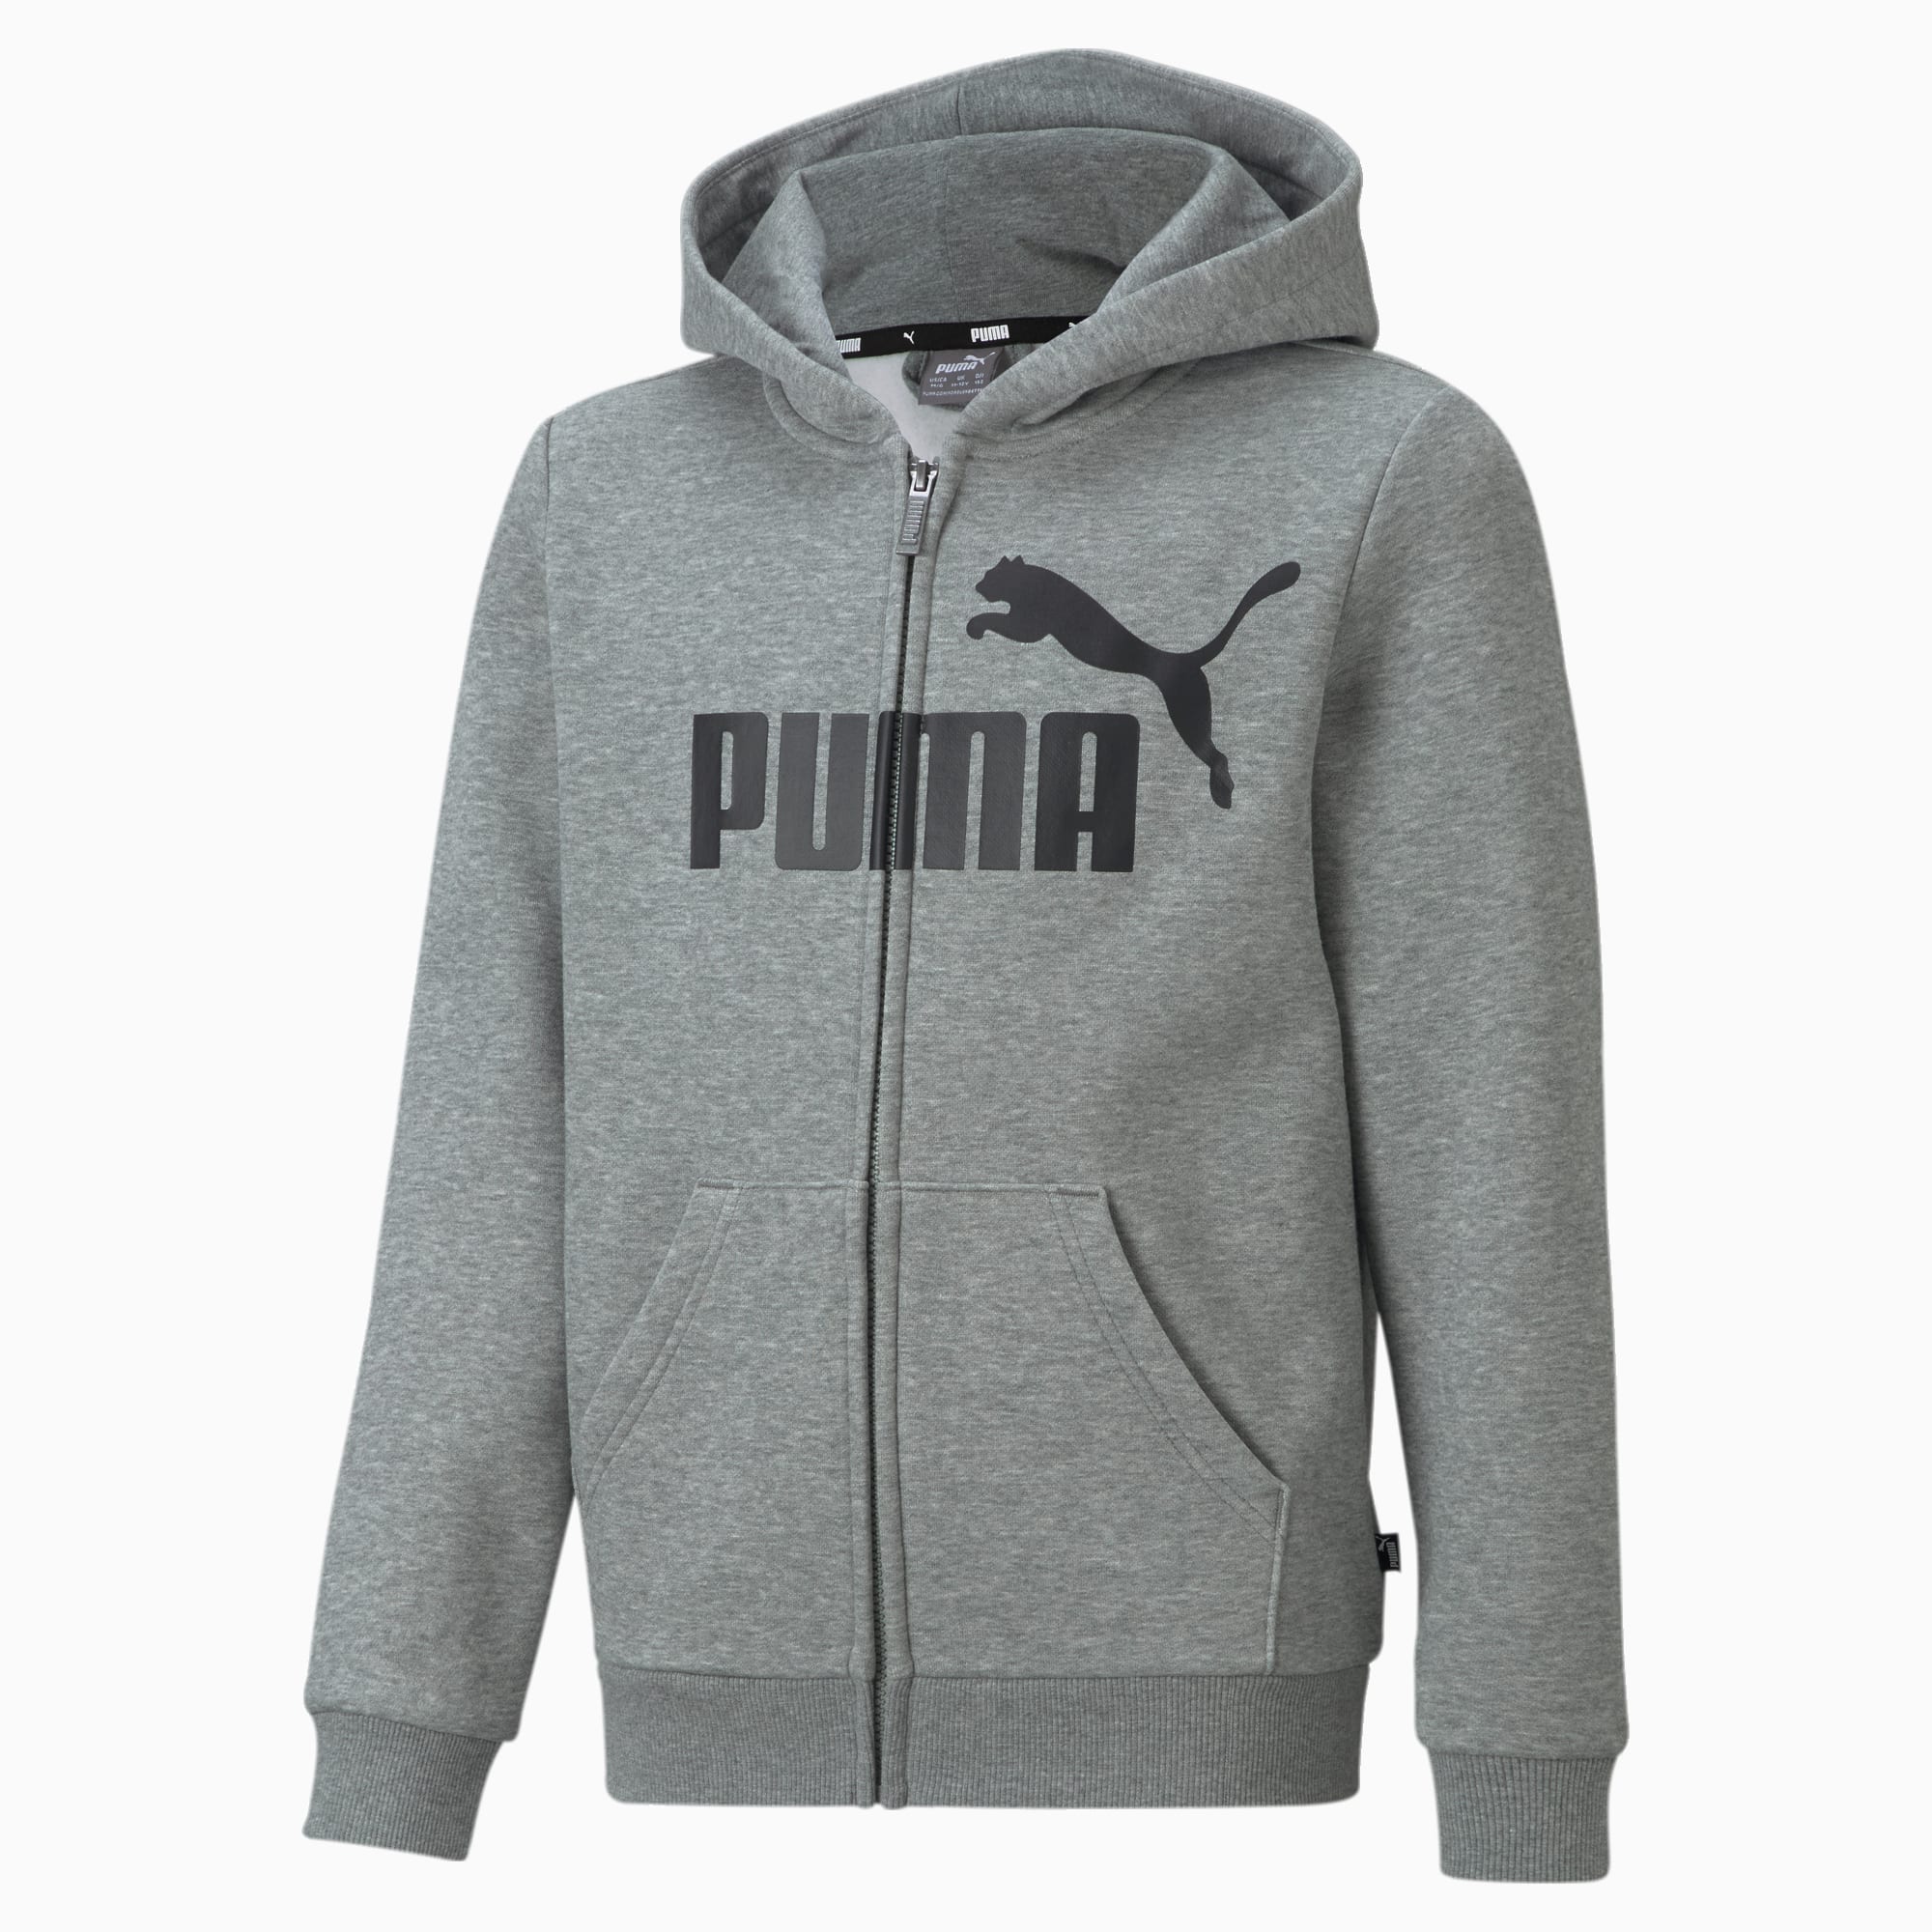 PUMA Essentials Big Logo Jugend Hoodie Mit Durchgehendem Reißverschluss Für Kinder, Mit Heide, Grau, Größe: 92, Kleidung